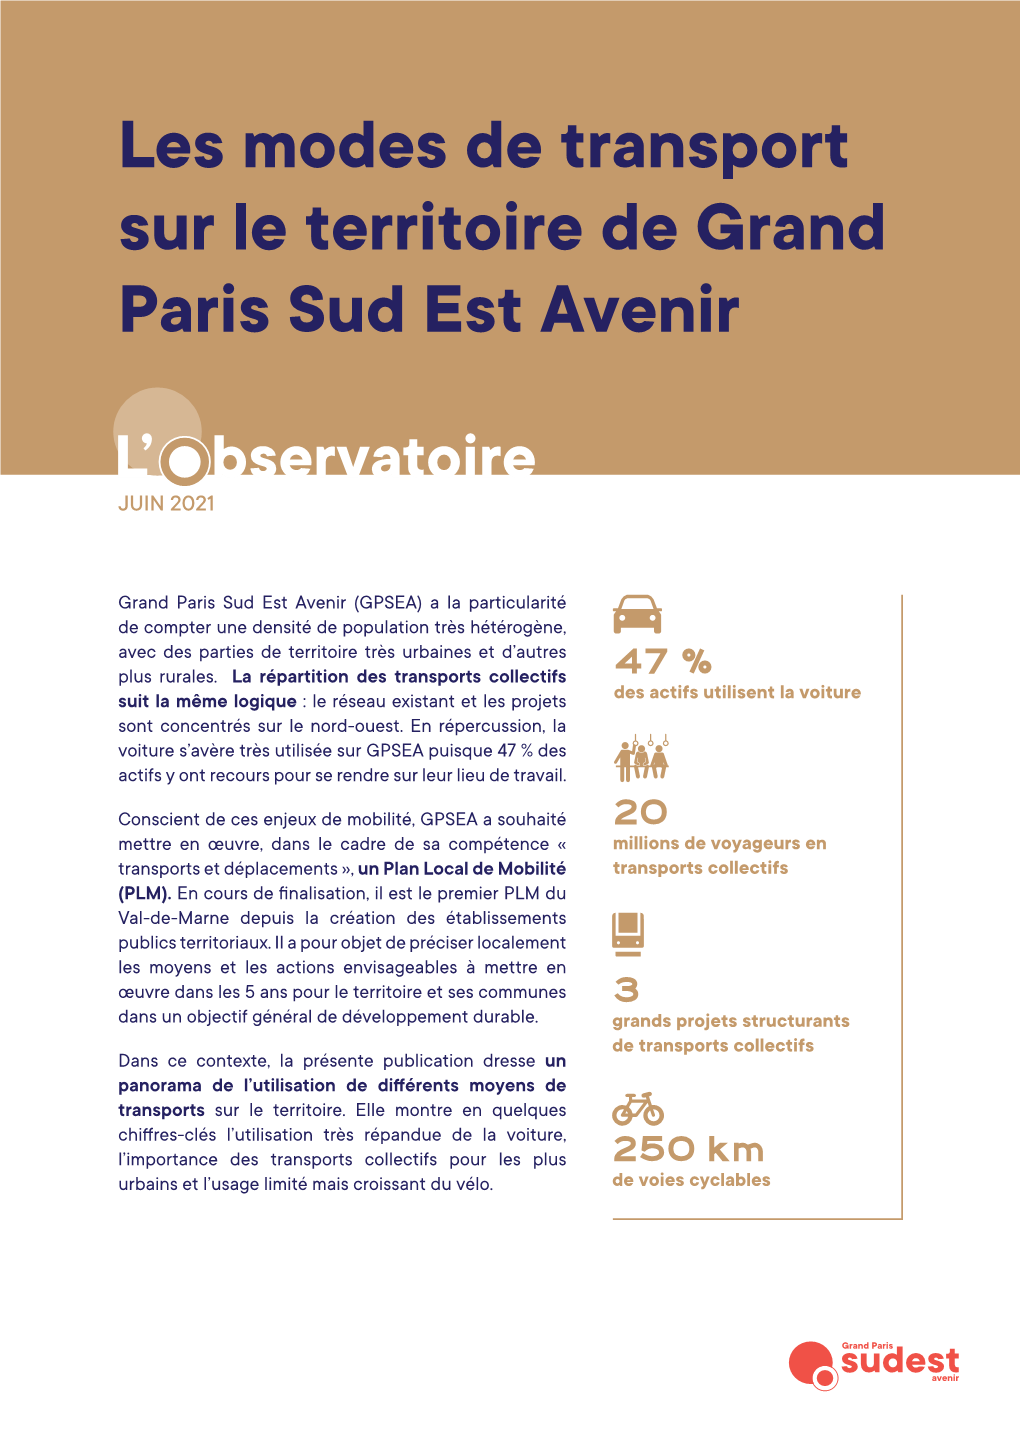 Les Modes De Transport Sur Le Territoire De Grand Paris Sud Est Avenir